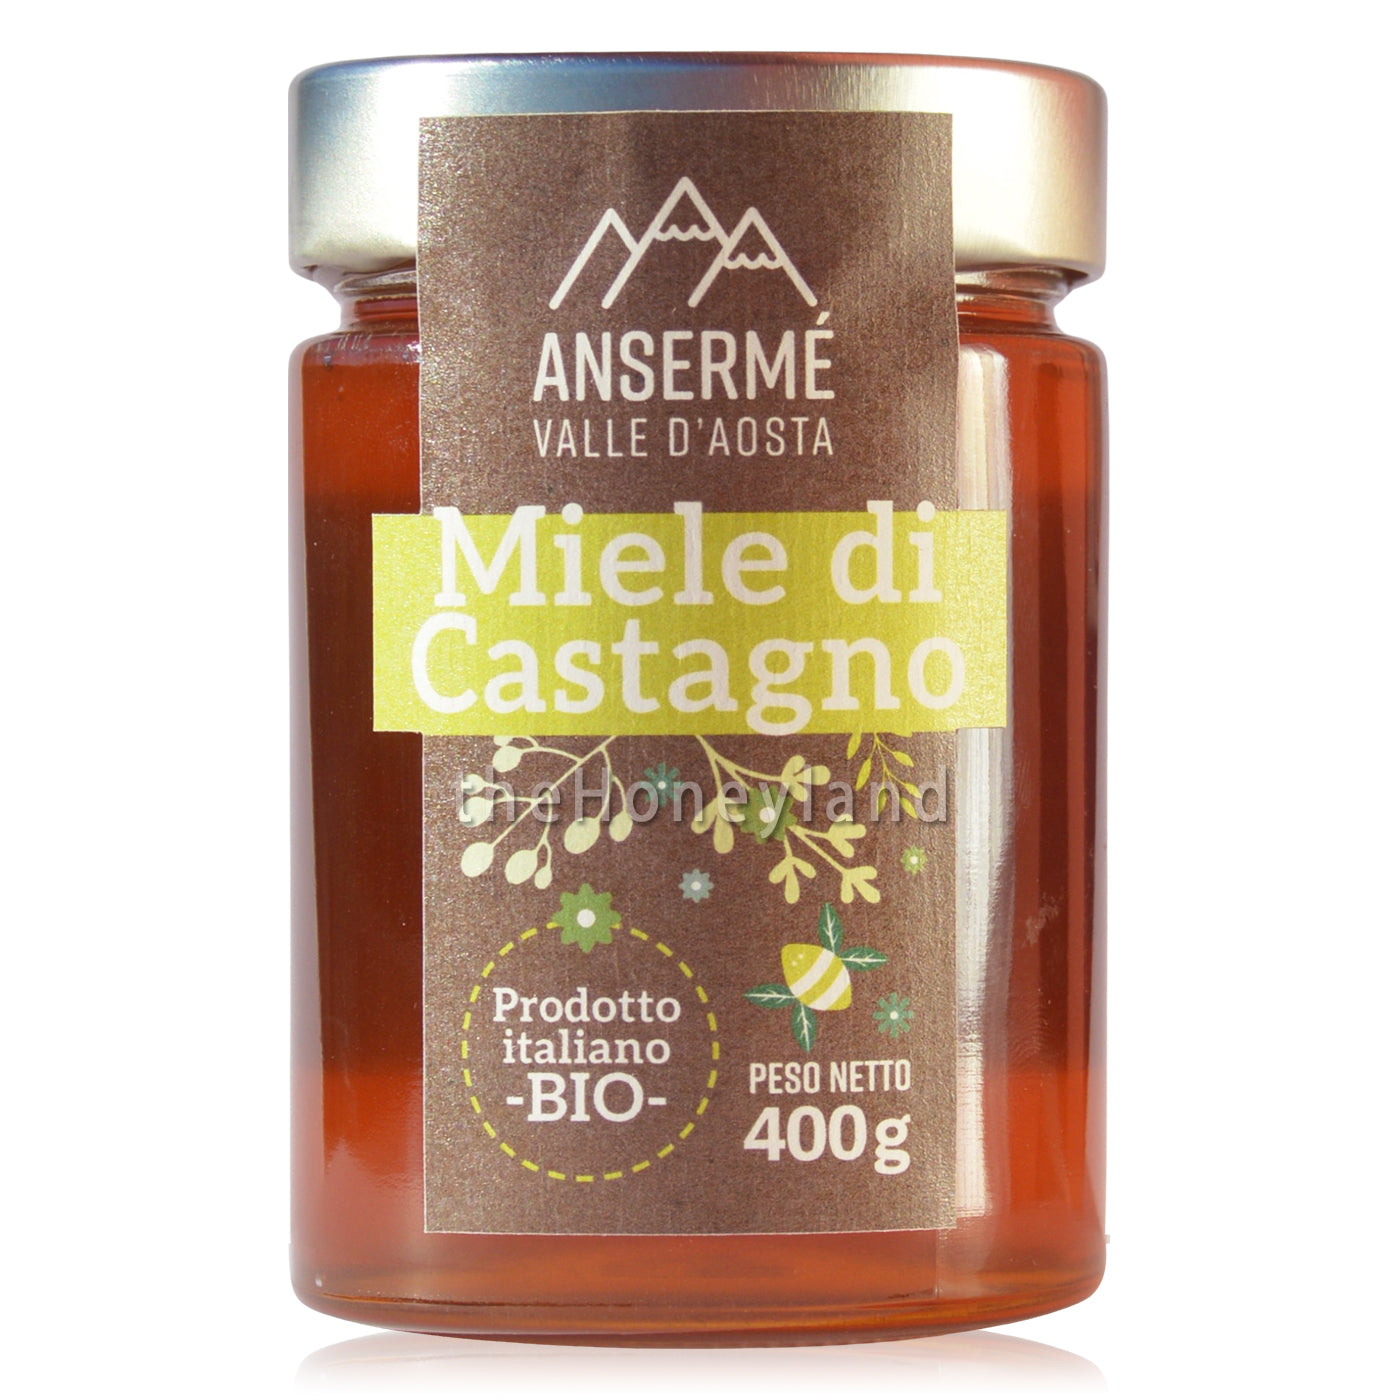 Miele di castagno biologico Valle d'Aosta